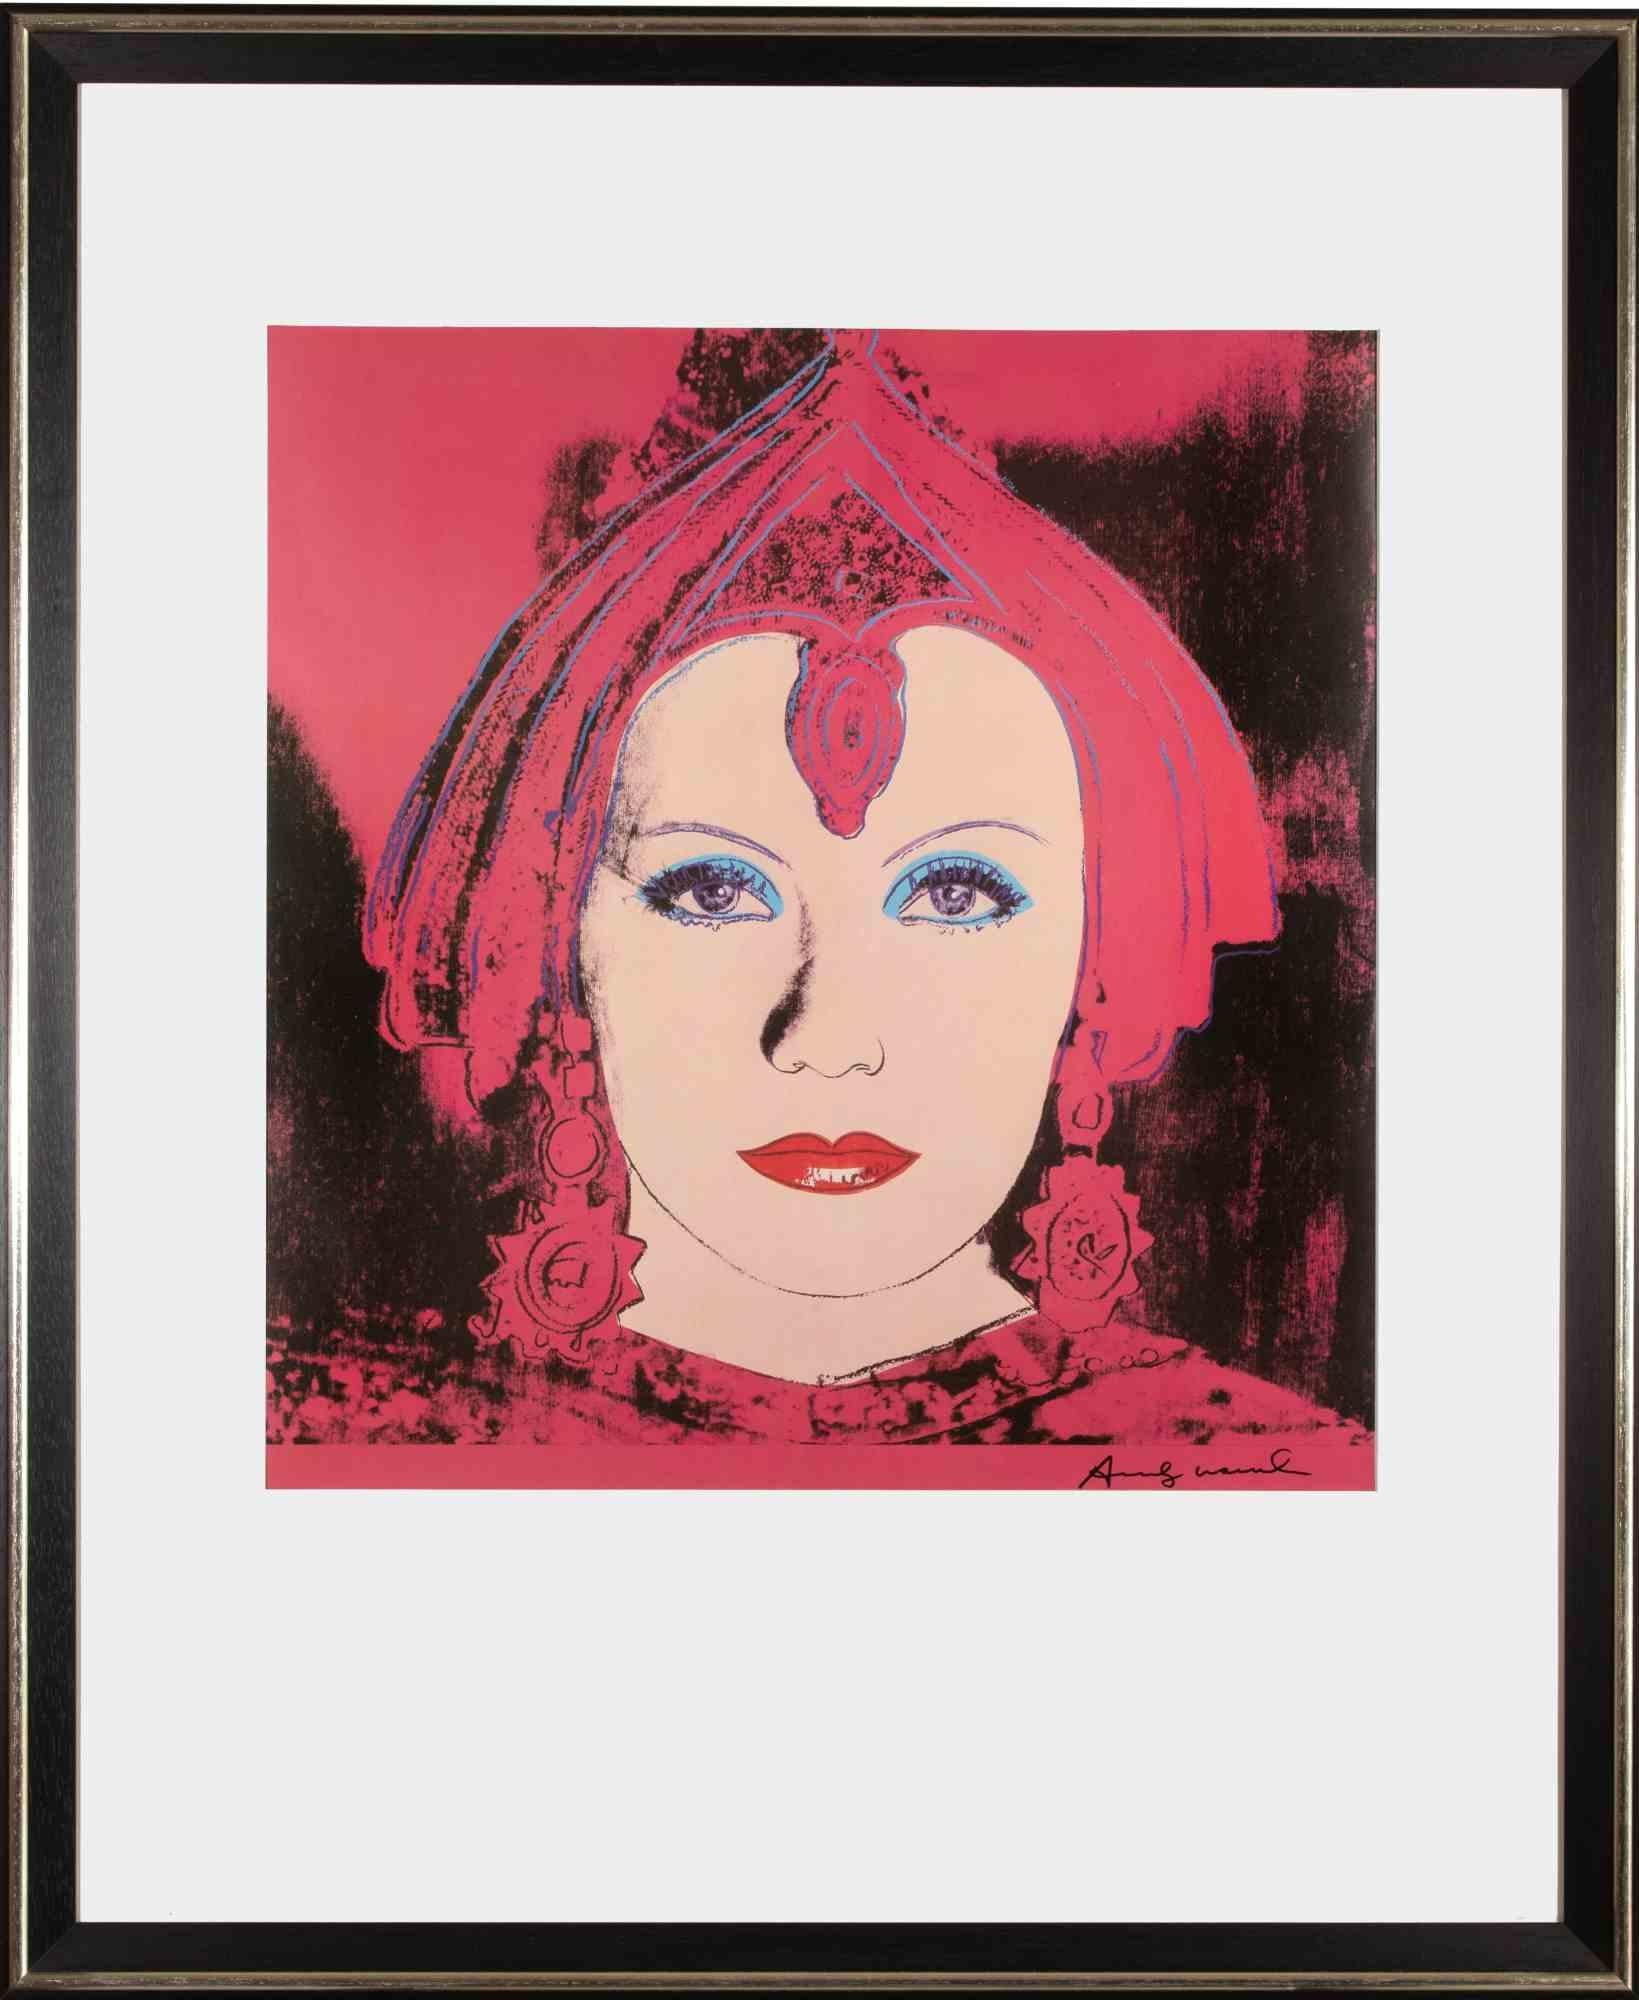 Greta Garbo en Mata Hari est une œuvre d'art contemporain réalisée par Andy Warhol en 1981.

Lithographie offset et couleur.

Cadre inclus : 104,5 x 86 x 3 cm.

Signé à la main en bas à droite.

Réf. Feldman-Schellmann II B. 258-267.

Provenance :